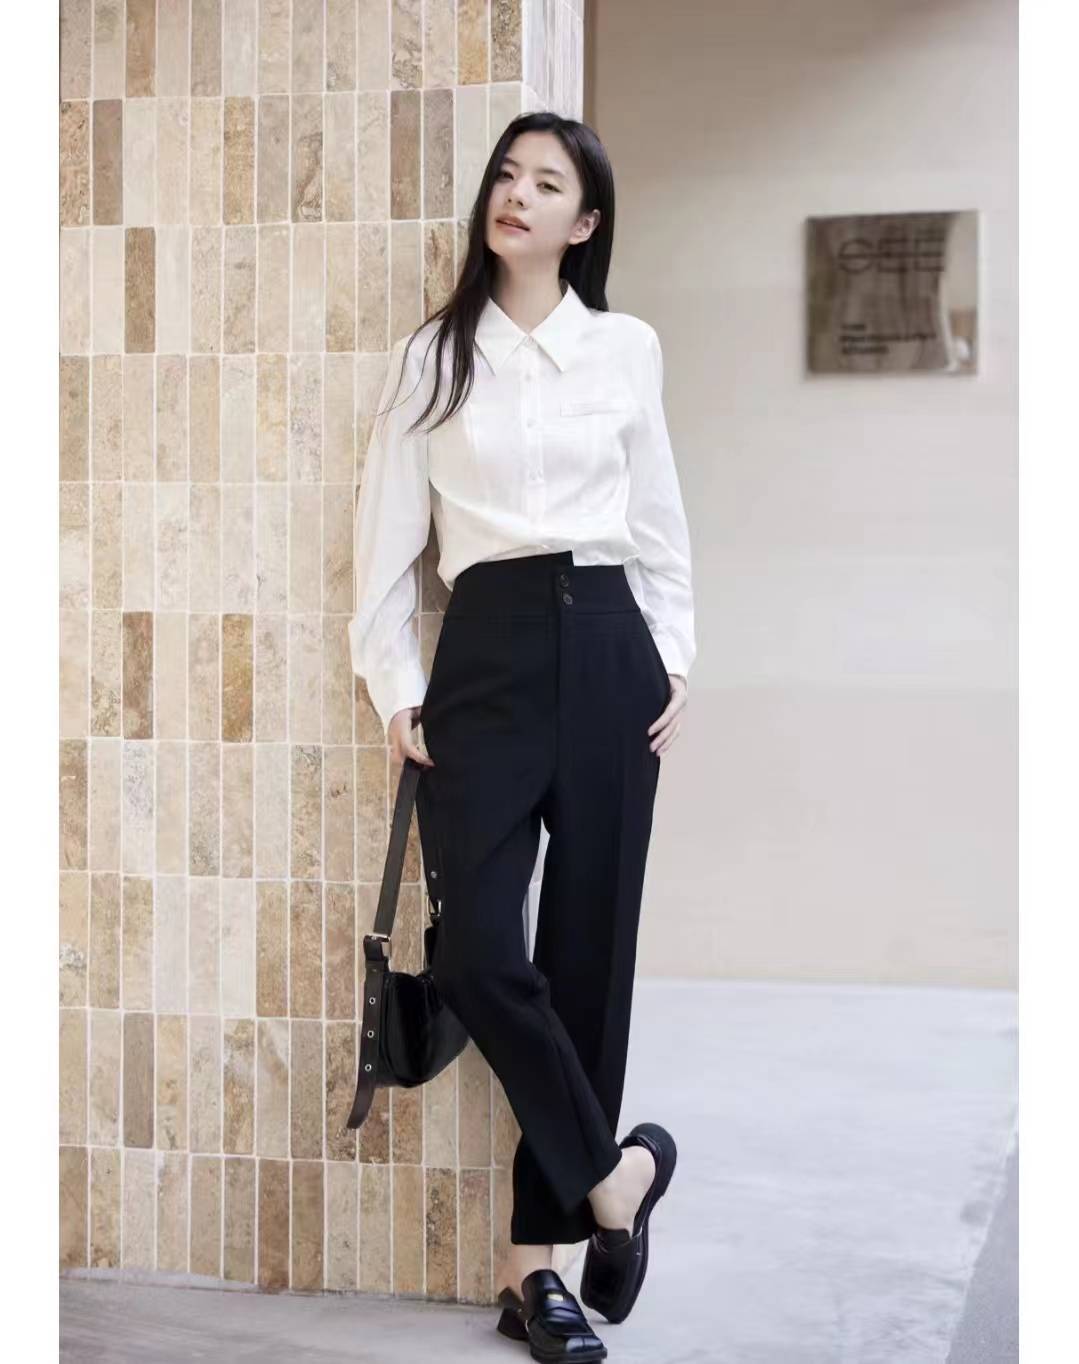 黑裤子搭配白衬衣,优雅气质穿出高级感!